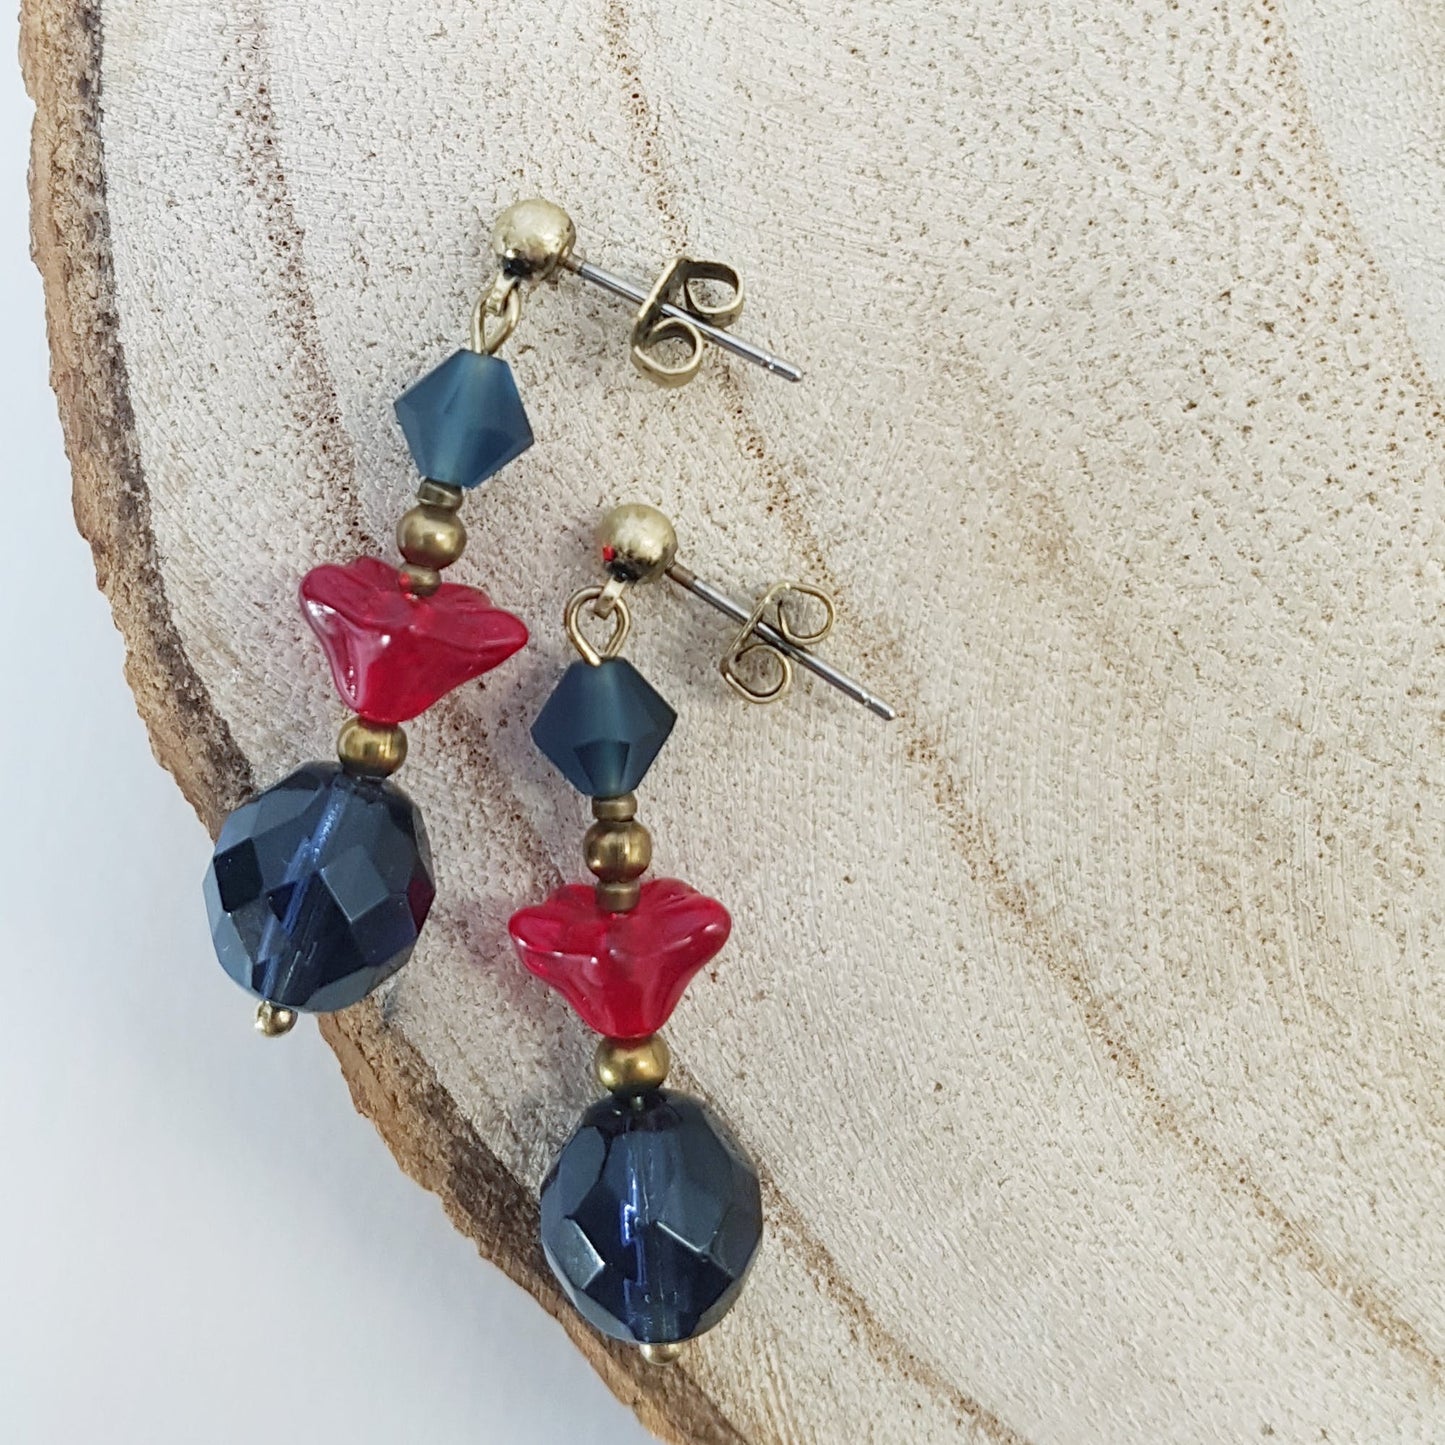 Blue/red Czech glass earrings